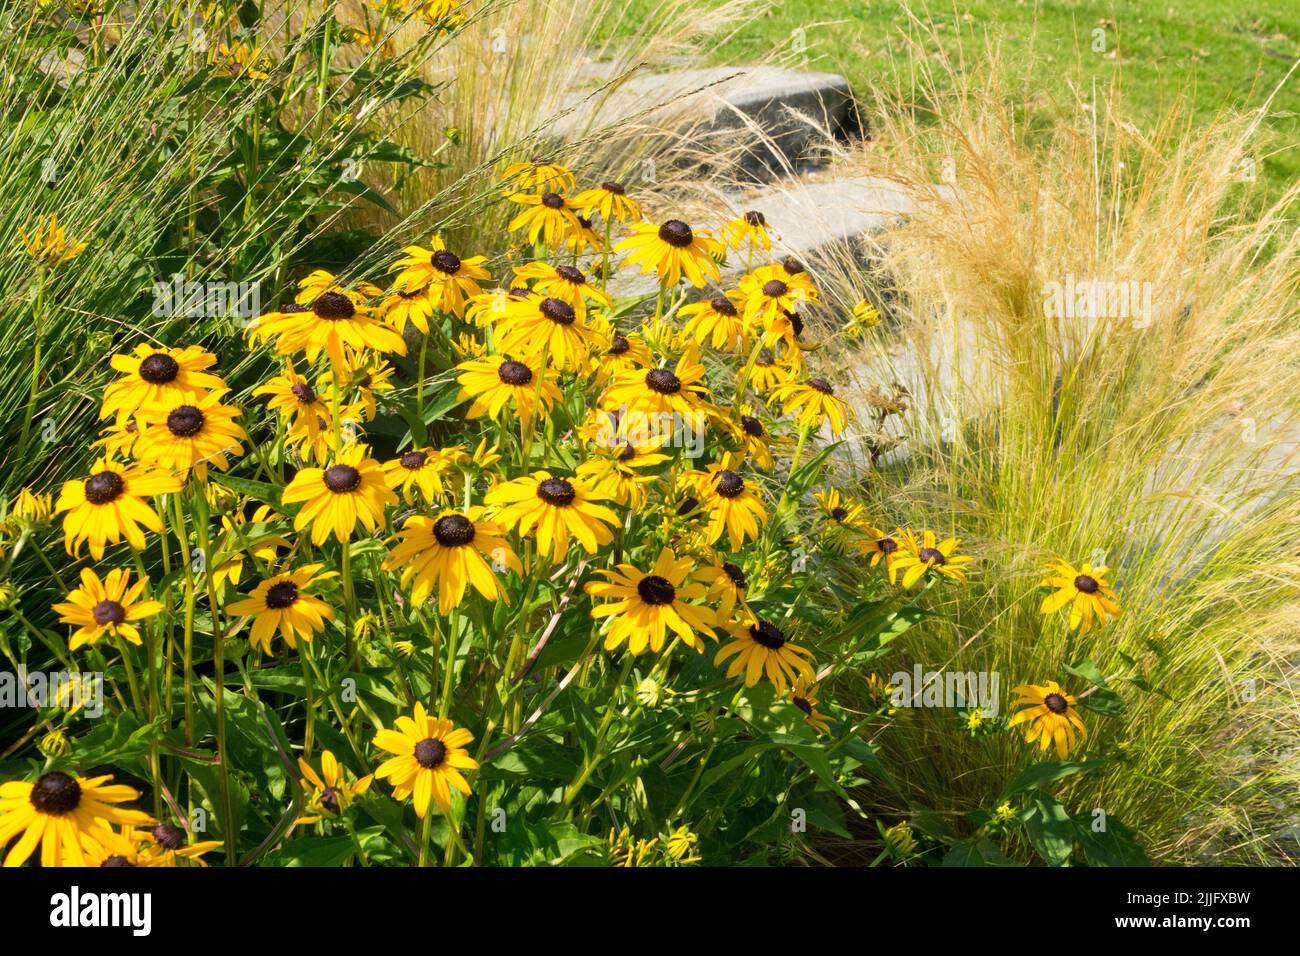 Susan con occhi neri, Goldsturm Rudbeckia a gradini del giardino, erba di Ponytail Foto Stock